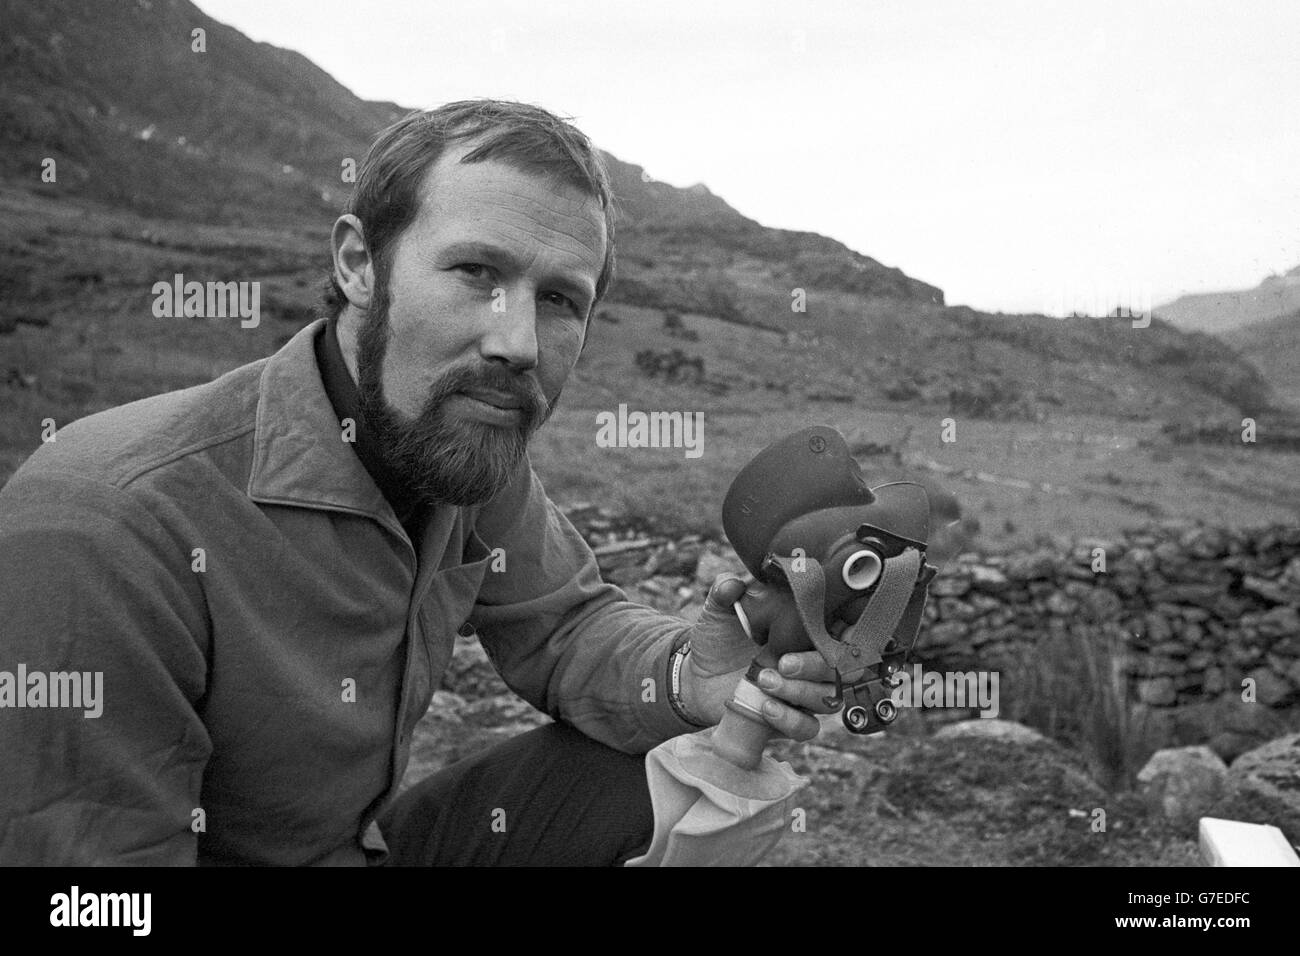 Chris Bonnington, 35 ans, teste de l'équipement d'alpinisme à Snowdonia, près de Nant Gwynant, Caernarvonshire. Bonnington prévoit de mener une expédition pour grimper sur l'Everest dans l'Himalaya. Banque D'Images